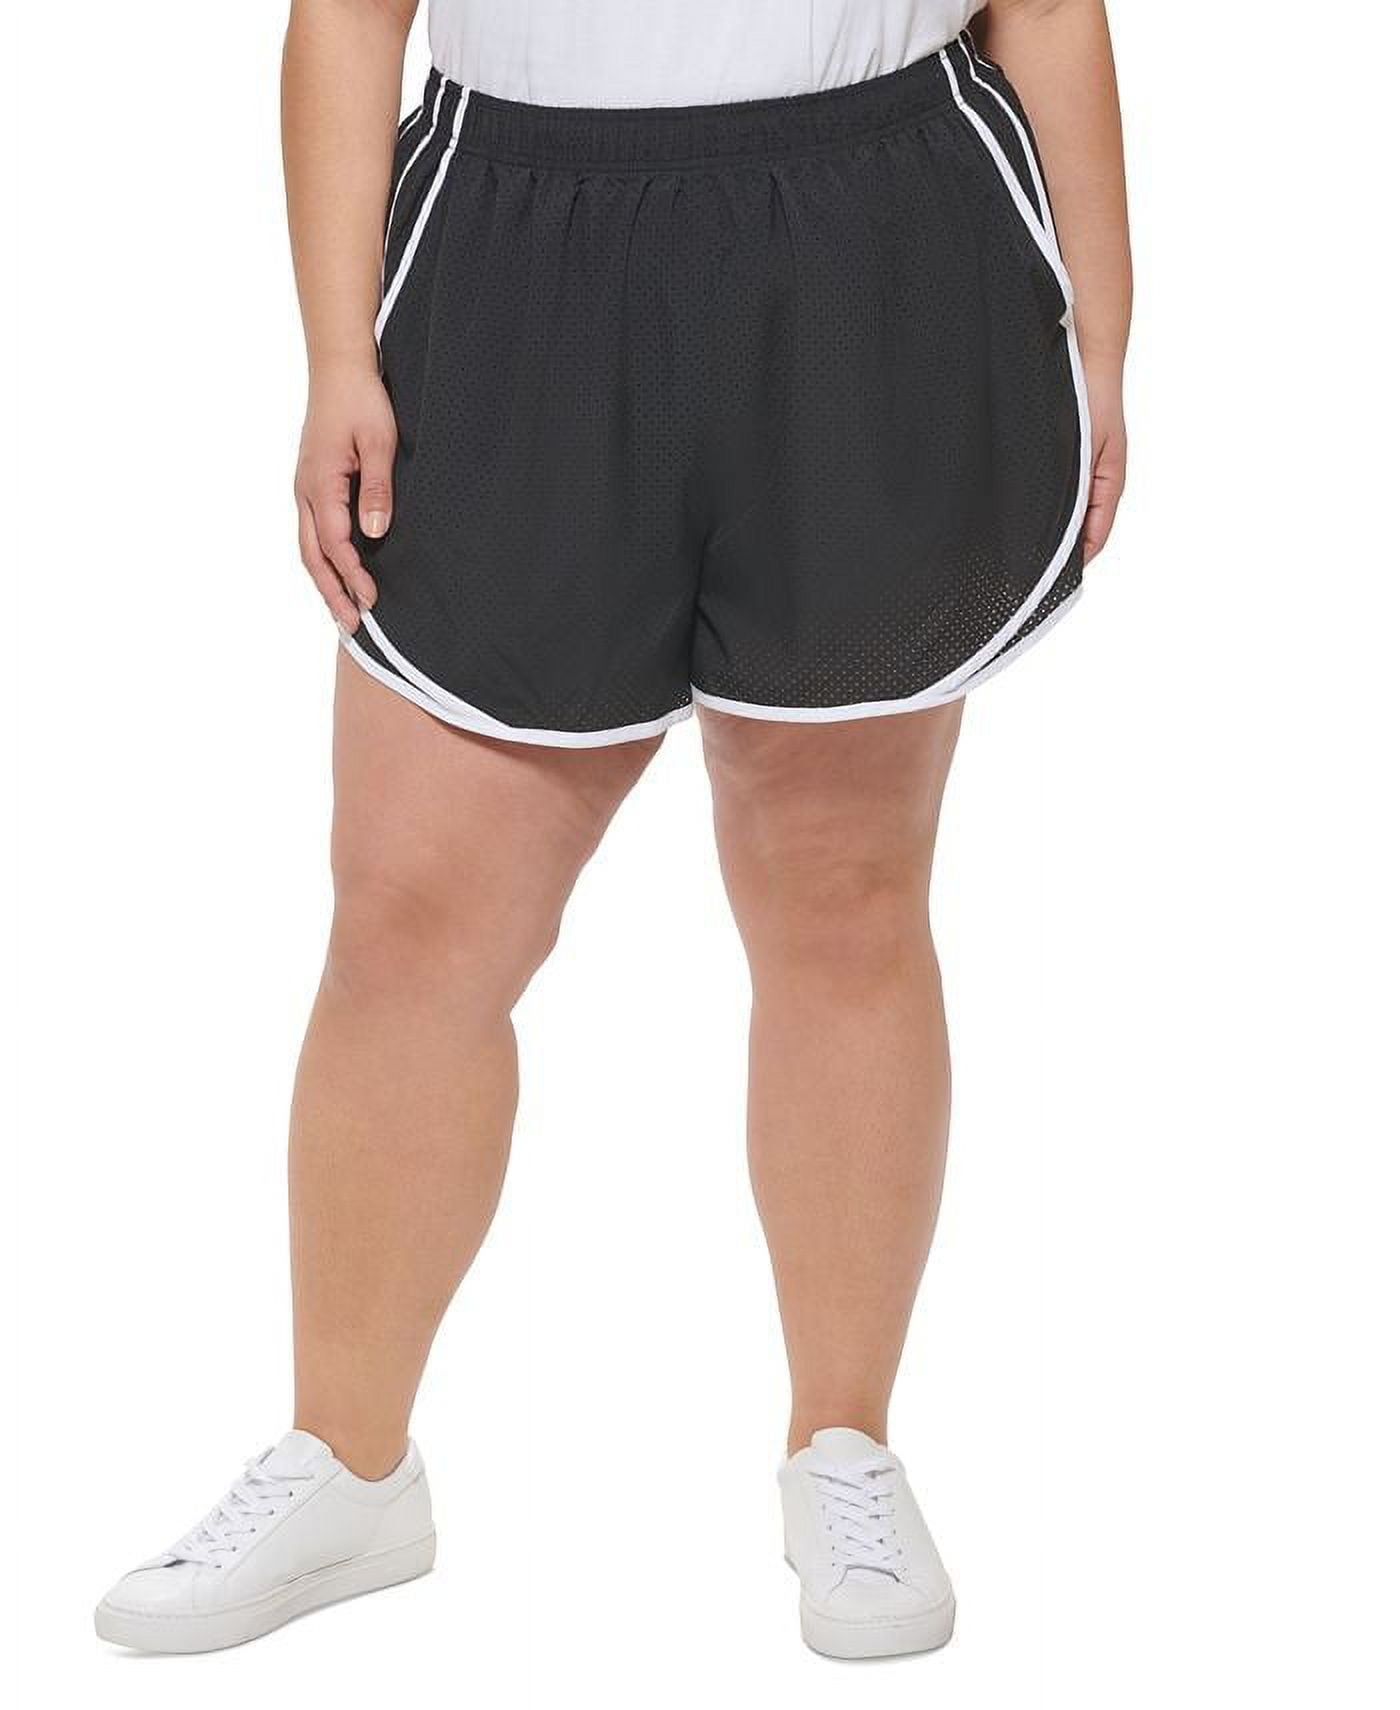 Calvin Klein Women's Running Shorts Black Size 2X 